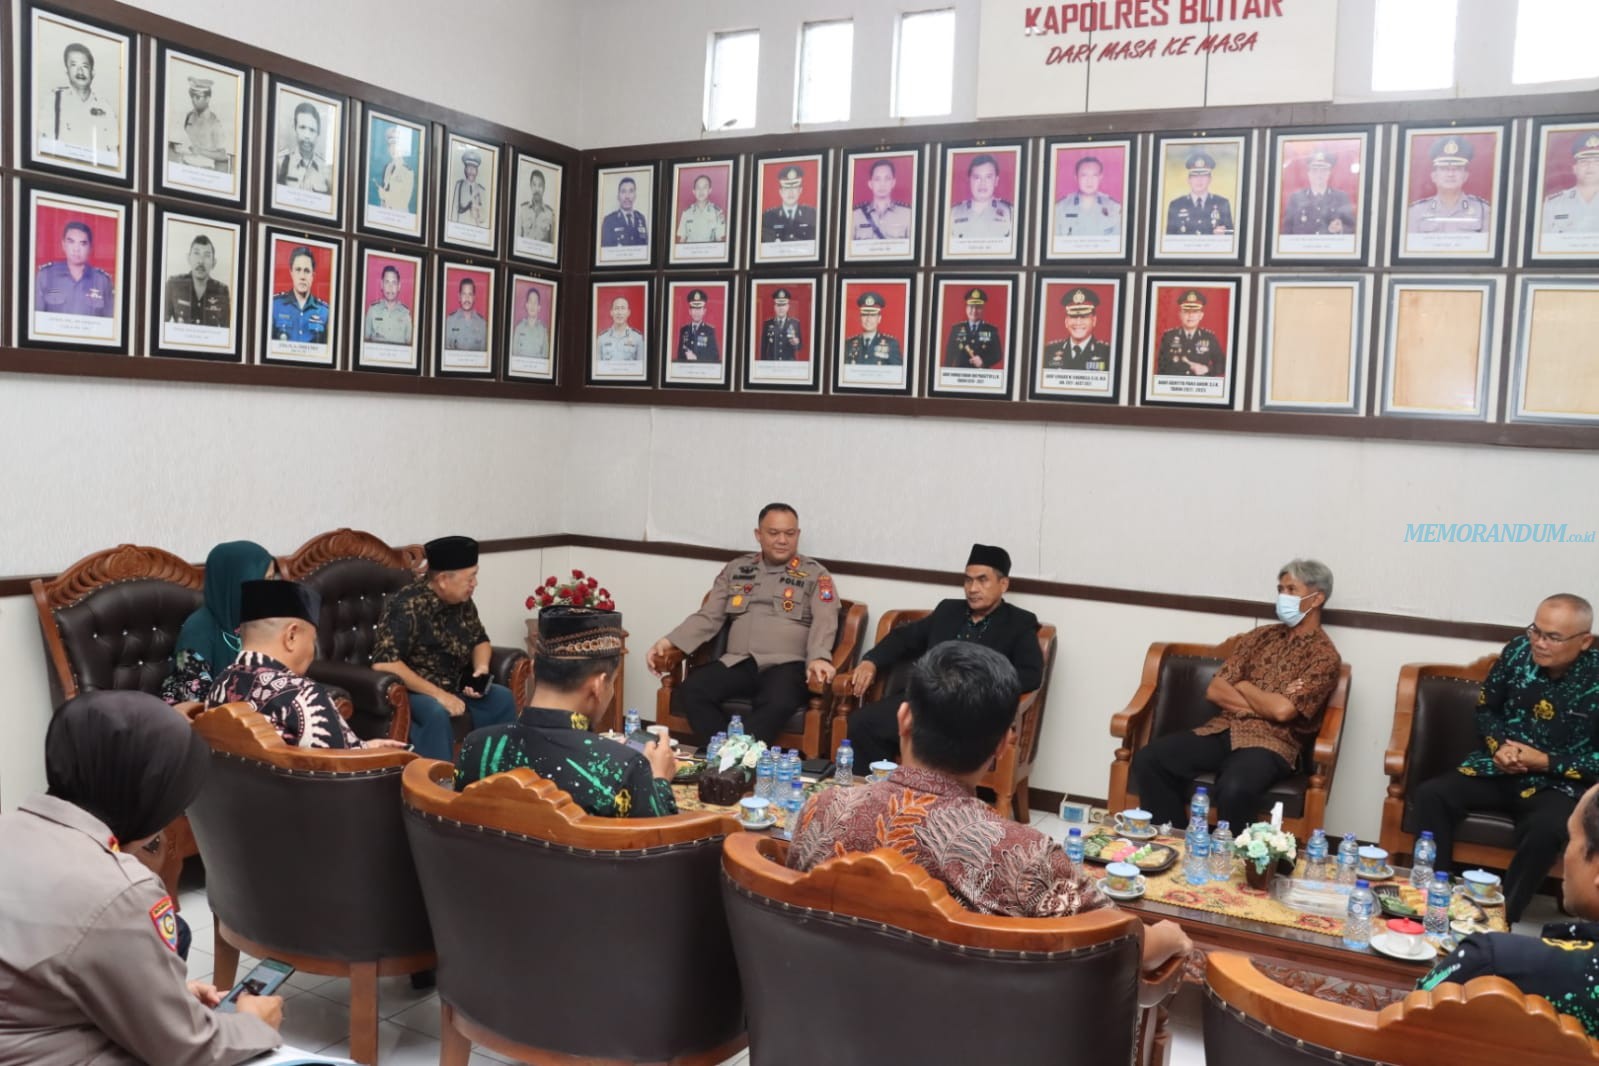 Kapolres Blitar dan FKUB Silaturahmi Tingkatkan Komunikasi Antar Umat Beragama